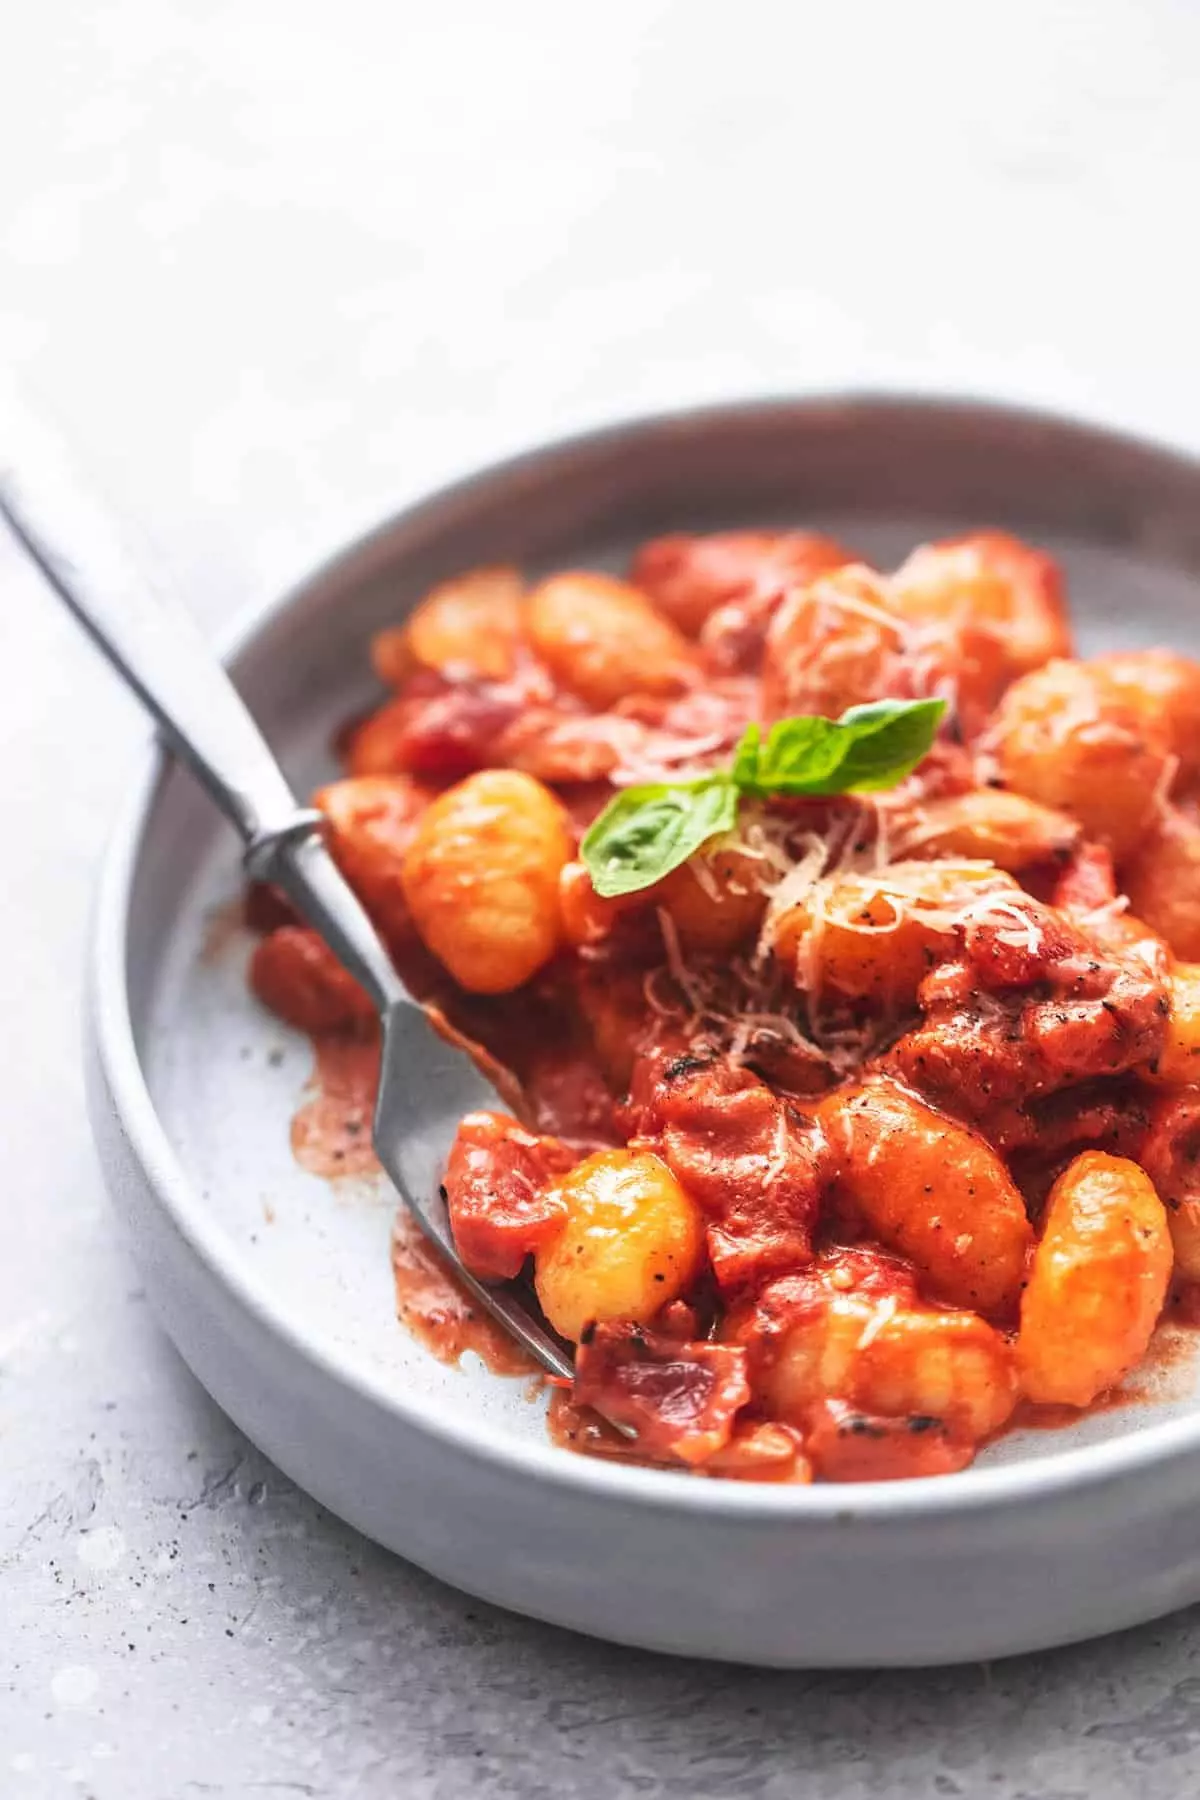 Gnocchis dans une sauce à la crème de tomate avec une fourchette sur une assiette.